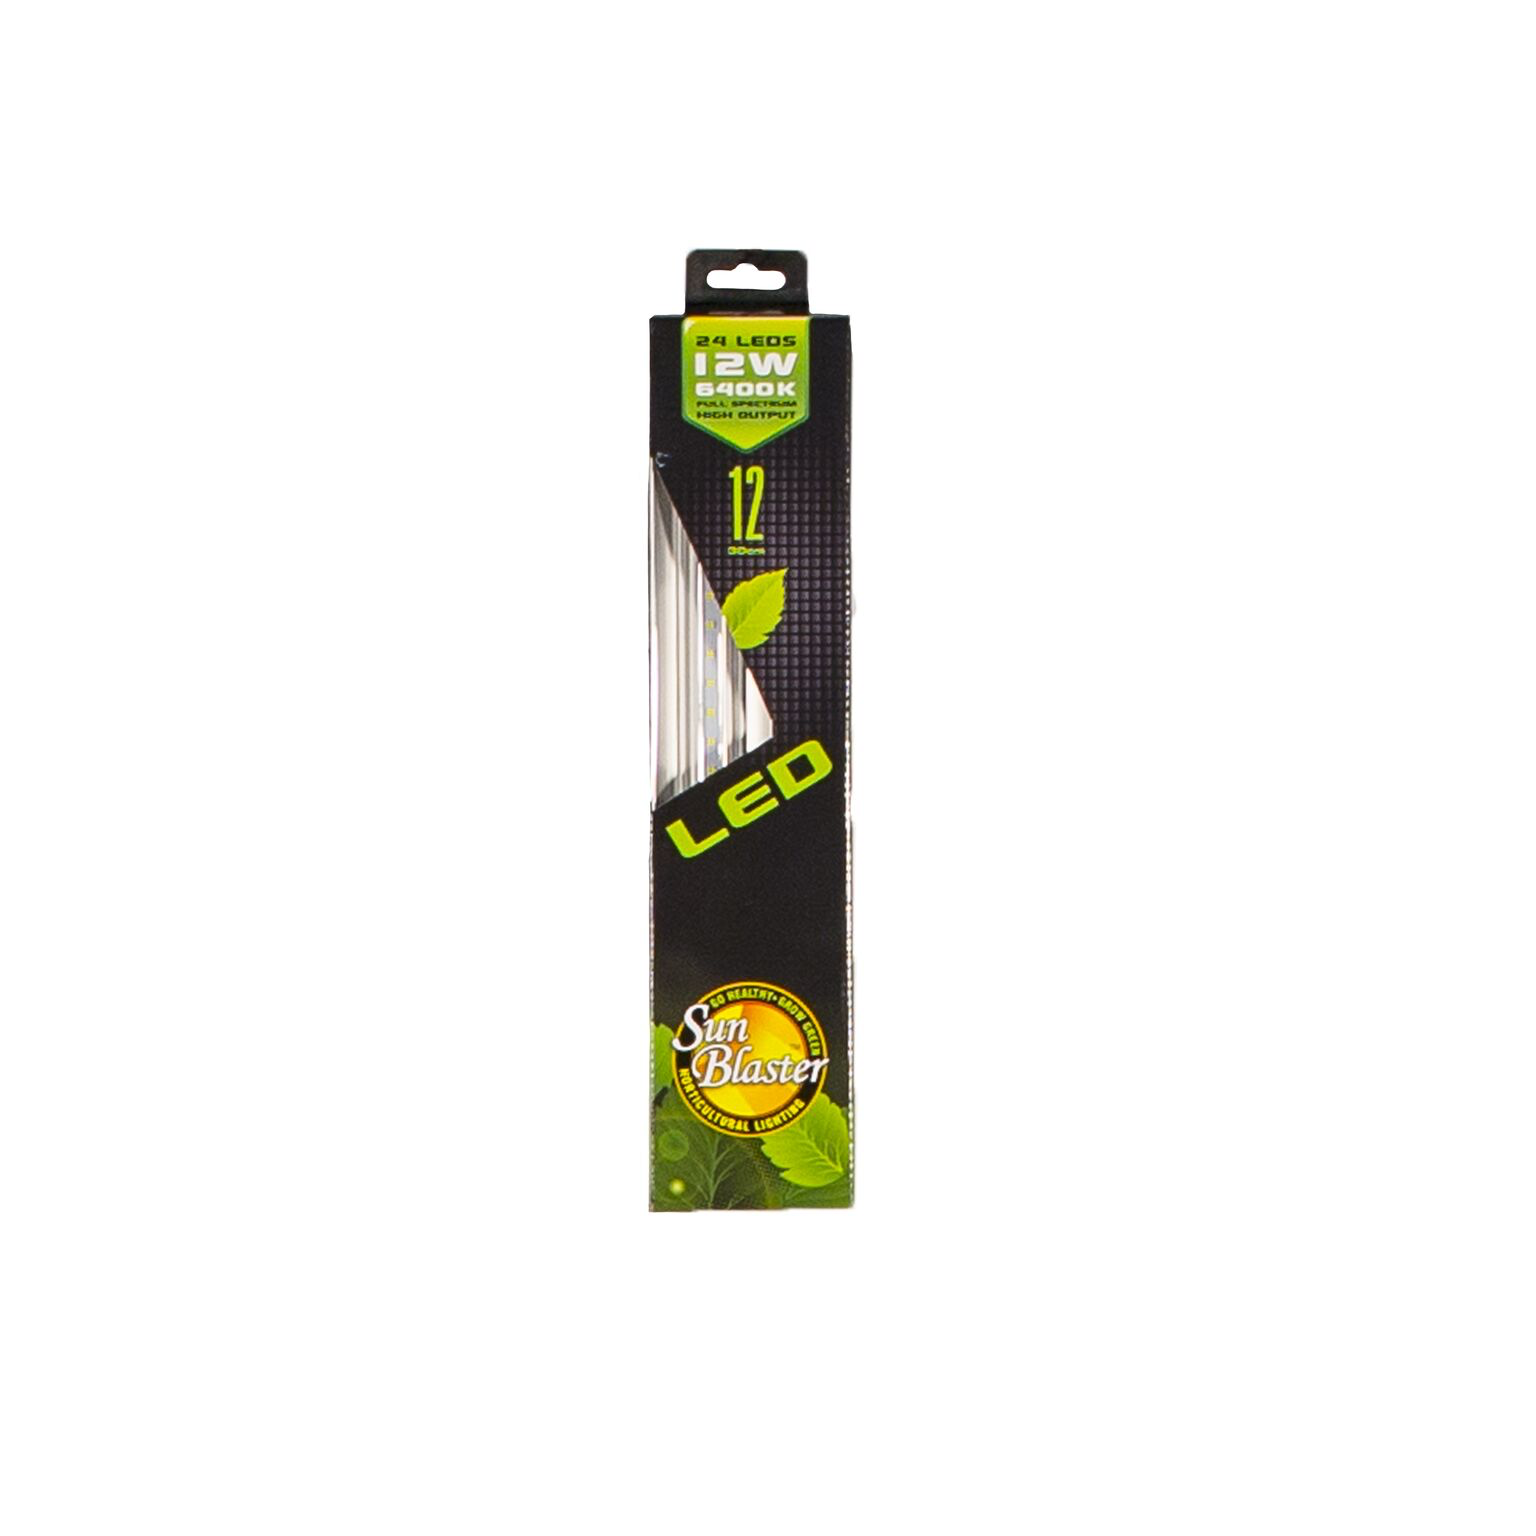 SunBlaster DEL pour plantes - LED Sun Blaster 12''  strip lights for plants